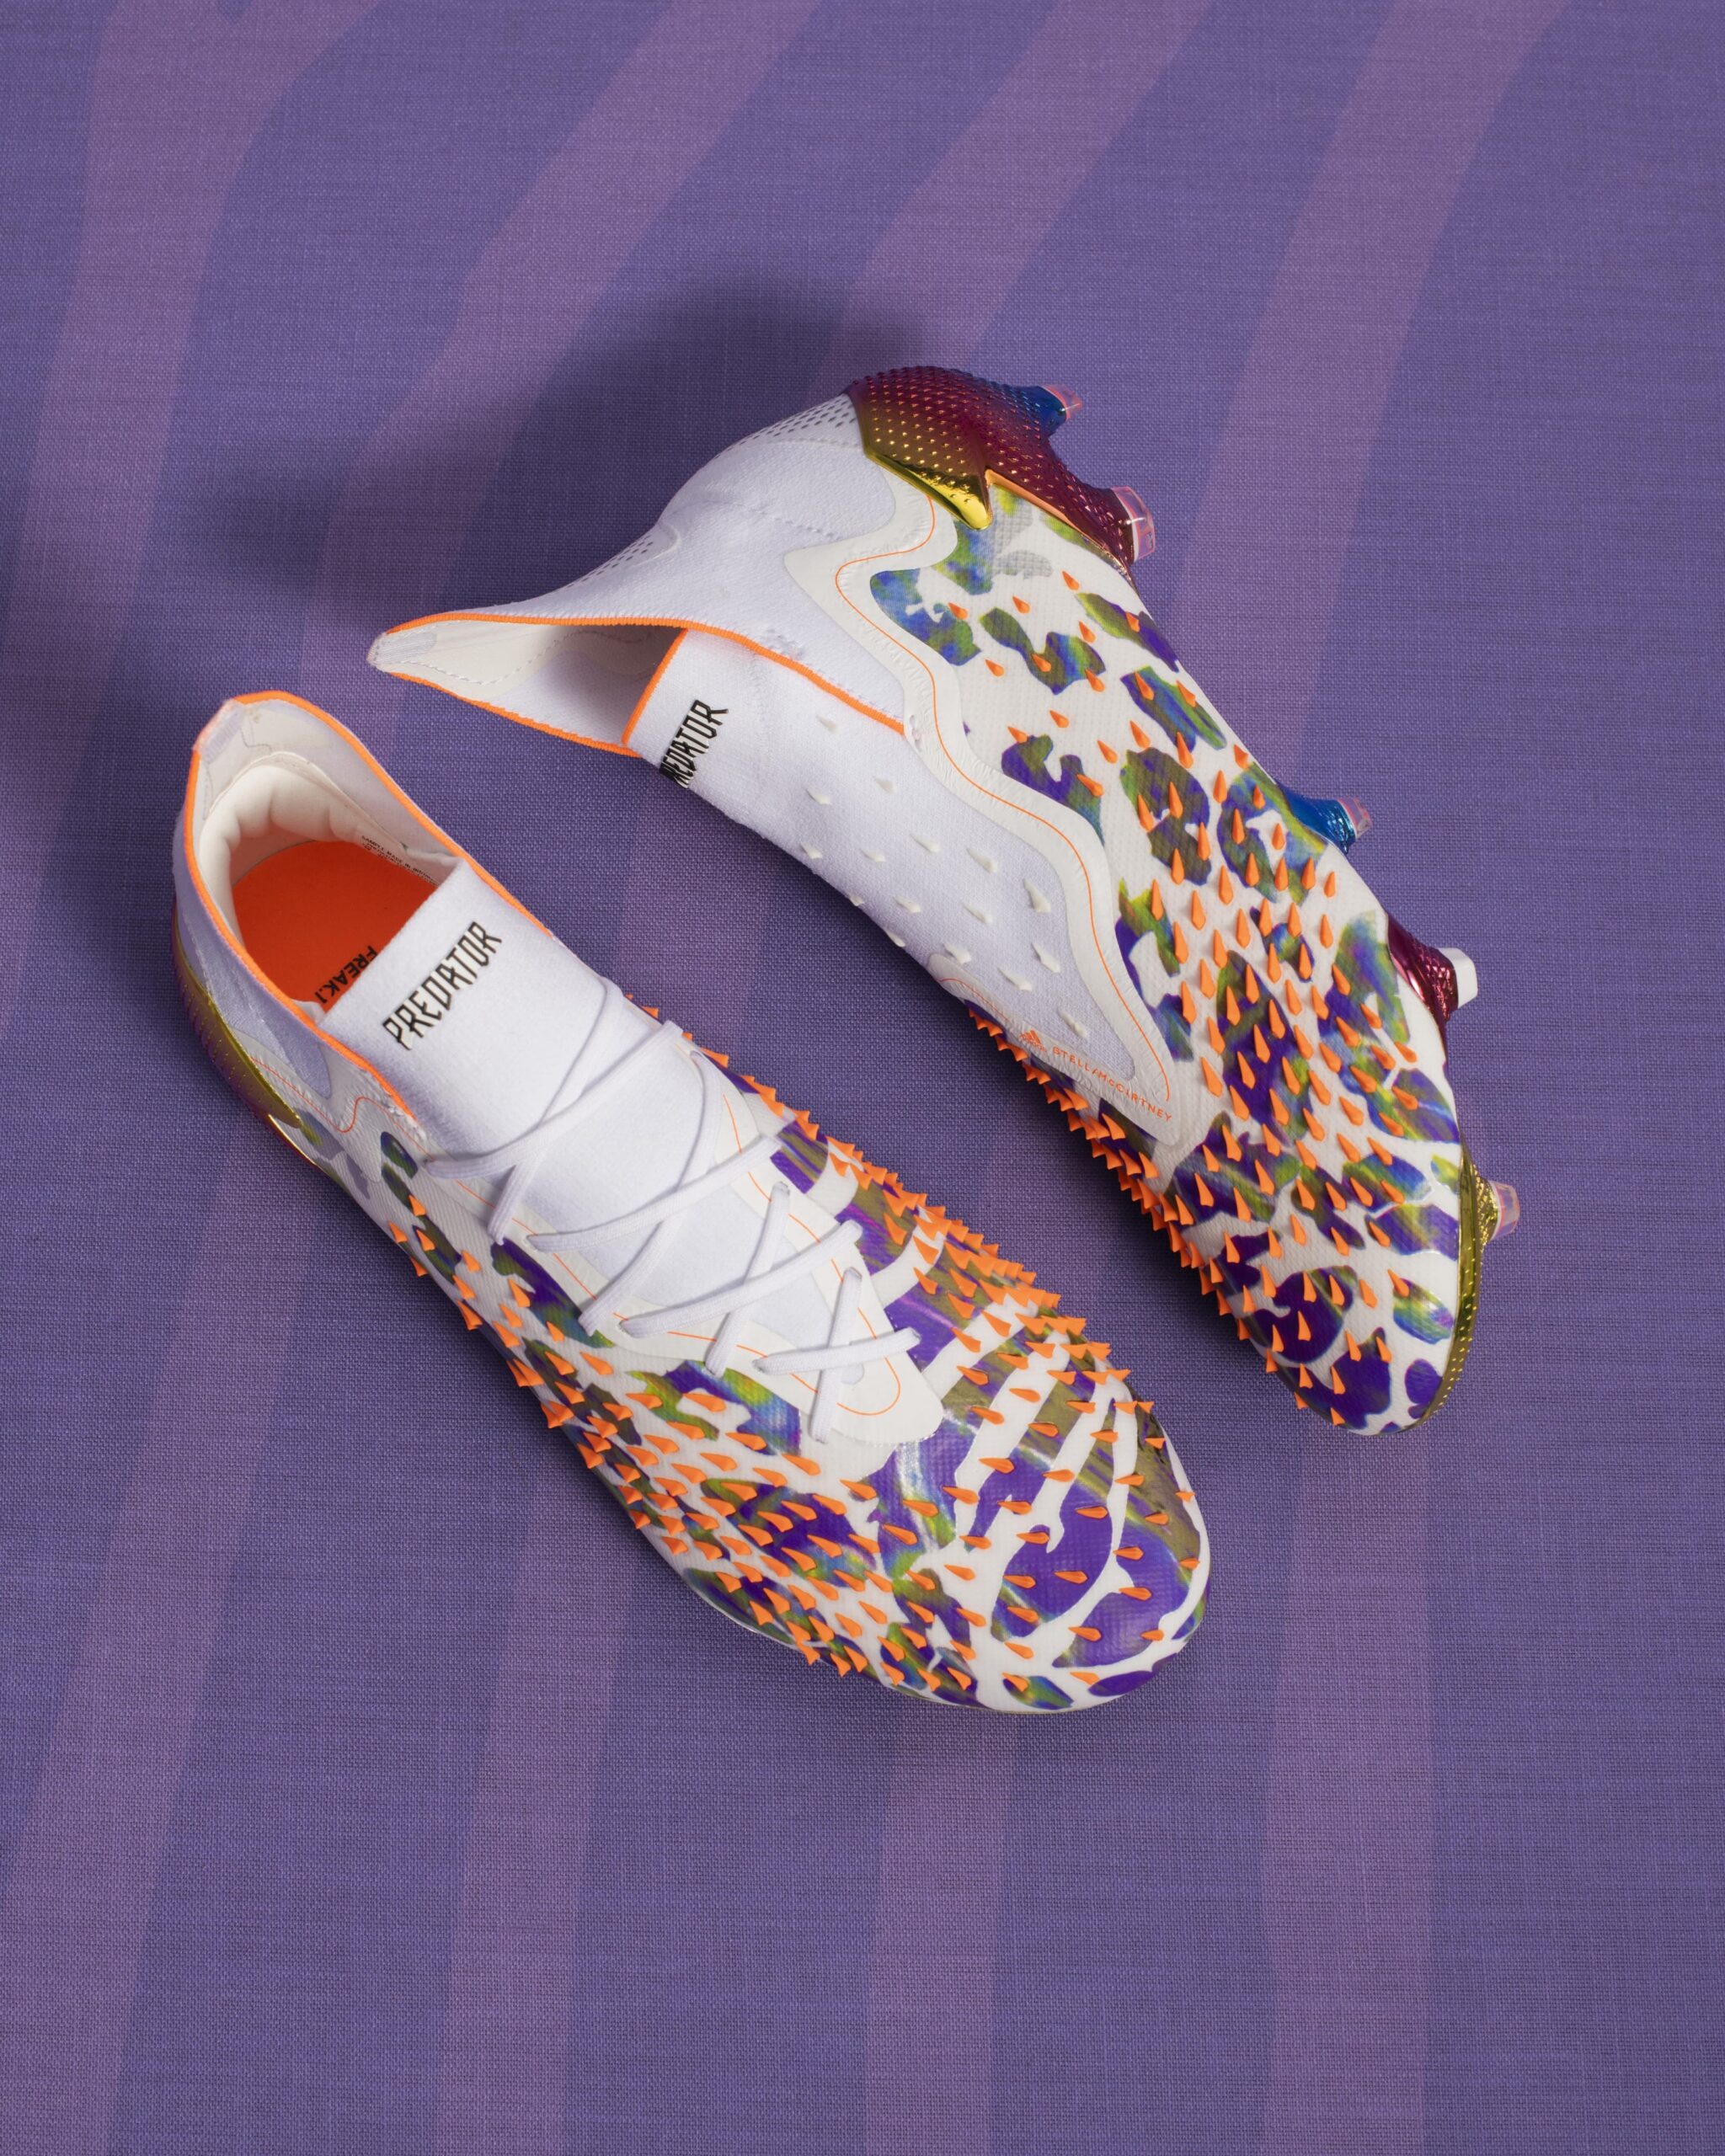 Adidas x Stella McCartney crean los primeros botines de fútbol veganos